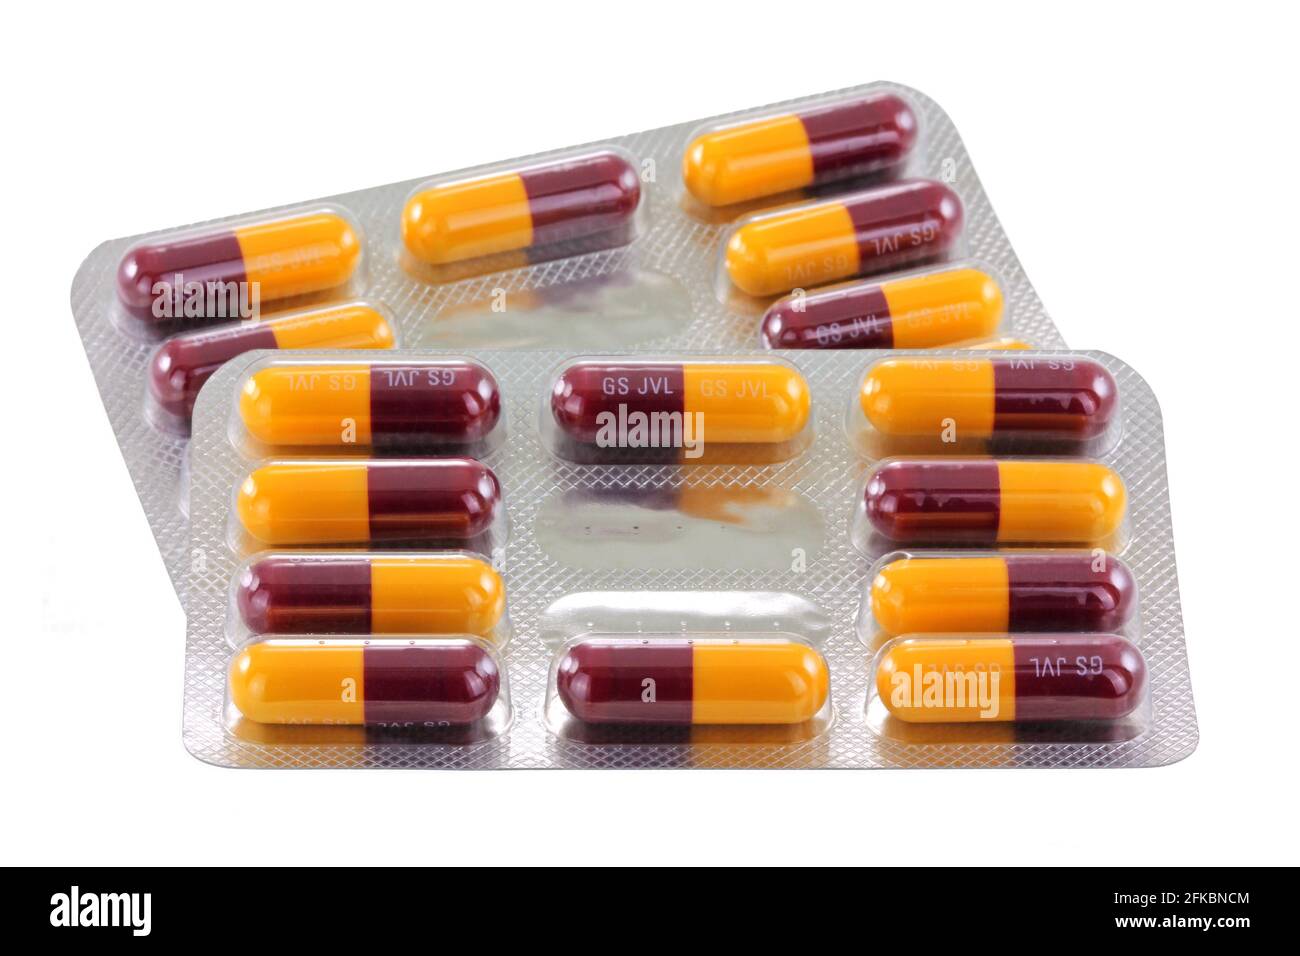 Pakete von Amoxicillin Kapseln. Amoxicillin ist ein Penicillin-Antibiotikum, das Infektionen behandelt, die durch bestimmte Bakterien verursacht werden. Stockfoto